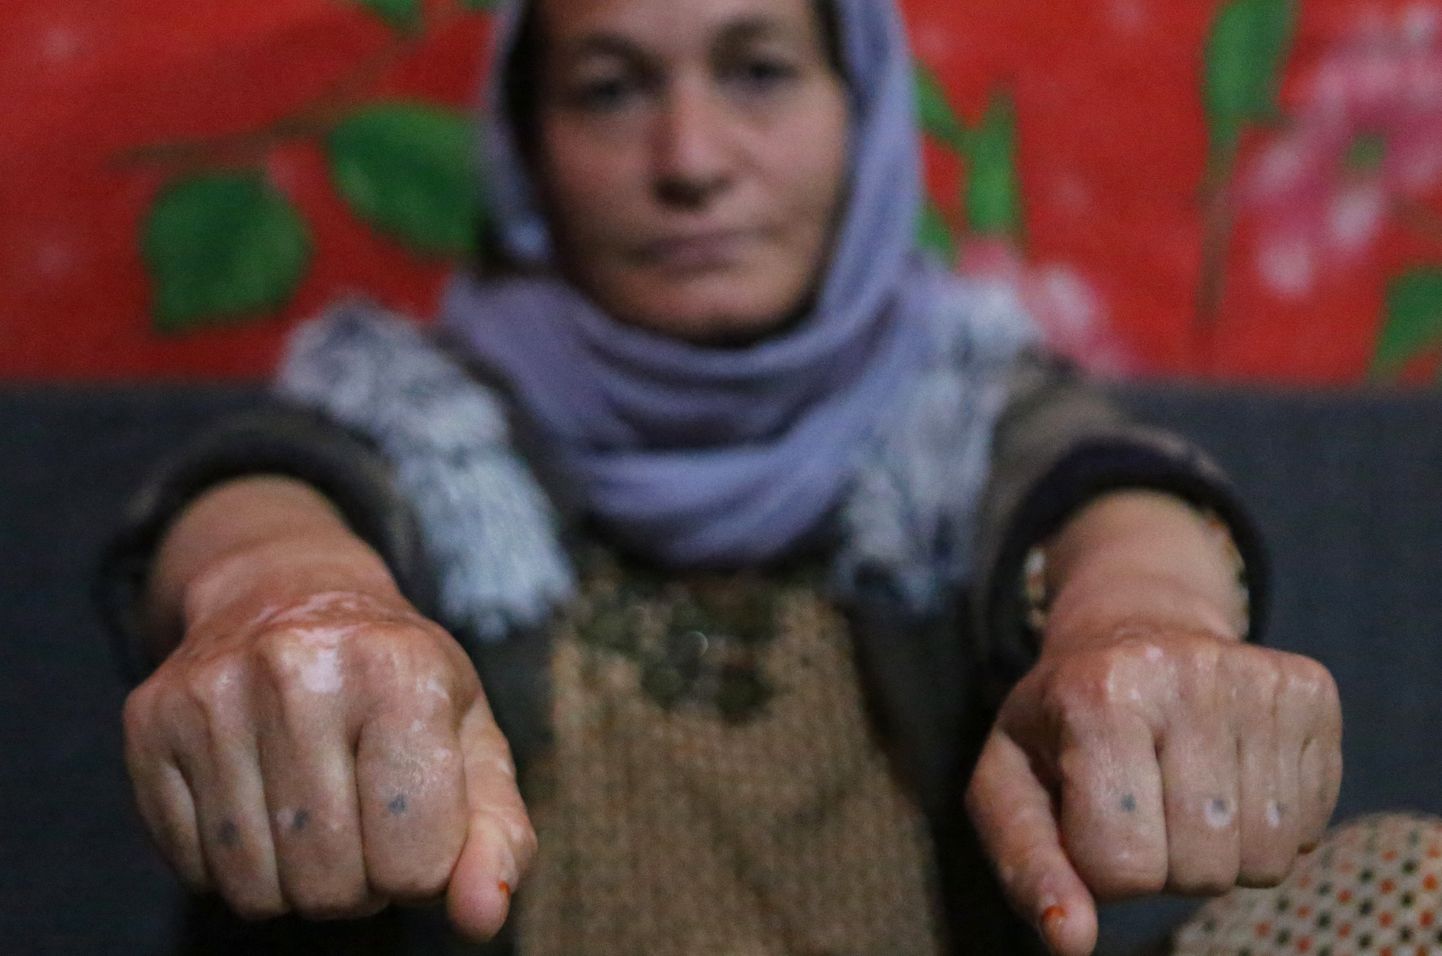 28. veebruar 2019. Jeziidi naine Baseh Hammo, kel õnnestus ISISe seksorjusest põgeneda, näitab vigastusi, mille albaanlasest võitleja talle piinamise kägus tekitas. Võitleja sundis naist suruma käed kuumale asfaldile, seejärel tallus ta saabastega naise kätel. Praegu elab Baseh telgis Dahukis, Iraagis. Vabaks pääsenud jeziidi naiste sõnul on sadu naisi, kes on jätkuvsalt kadunud ning kes ei pruugi kunagi koju tagasi pöörduda.